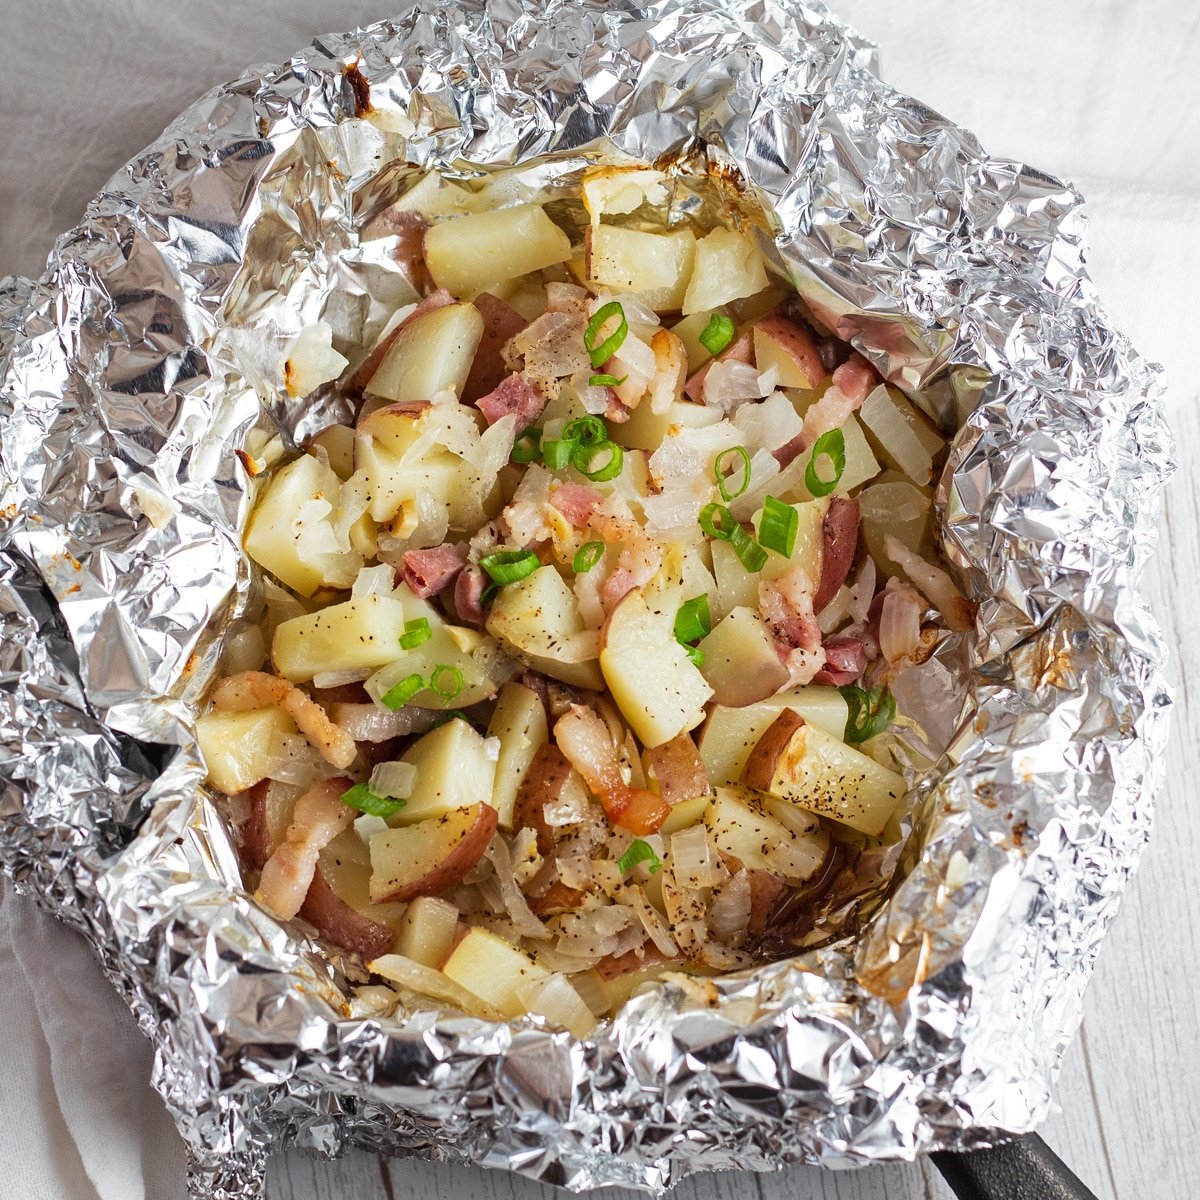 Corte as batatas vermelhas em papel alumínio com bacon, cebola e alho.